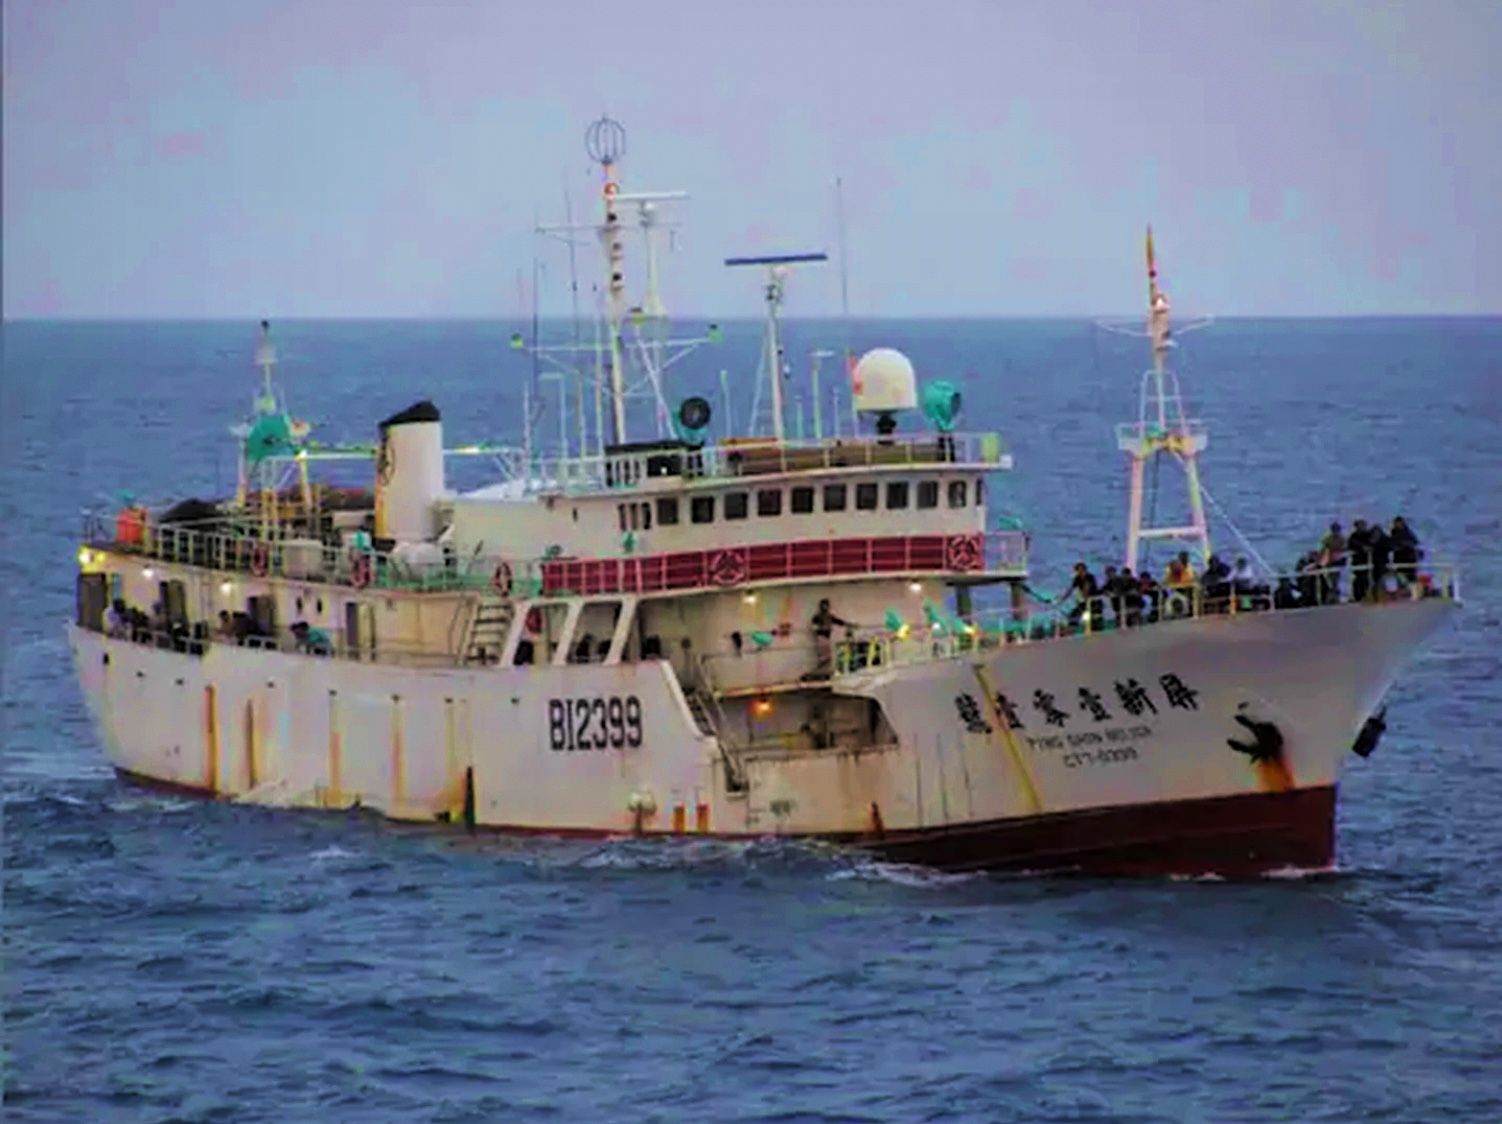 Barco Ping Shin 101, desde donde se cometió en 2012 la masacre en alta mar (Océano Índico). / Foto: Vía Infobae